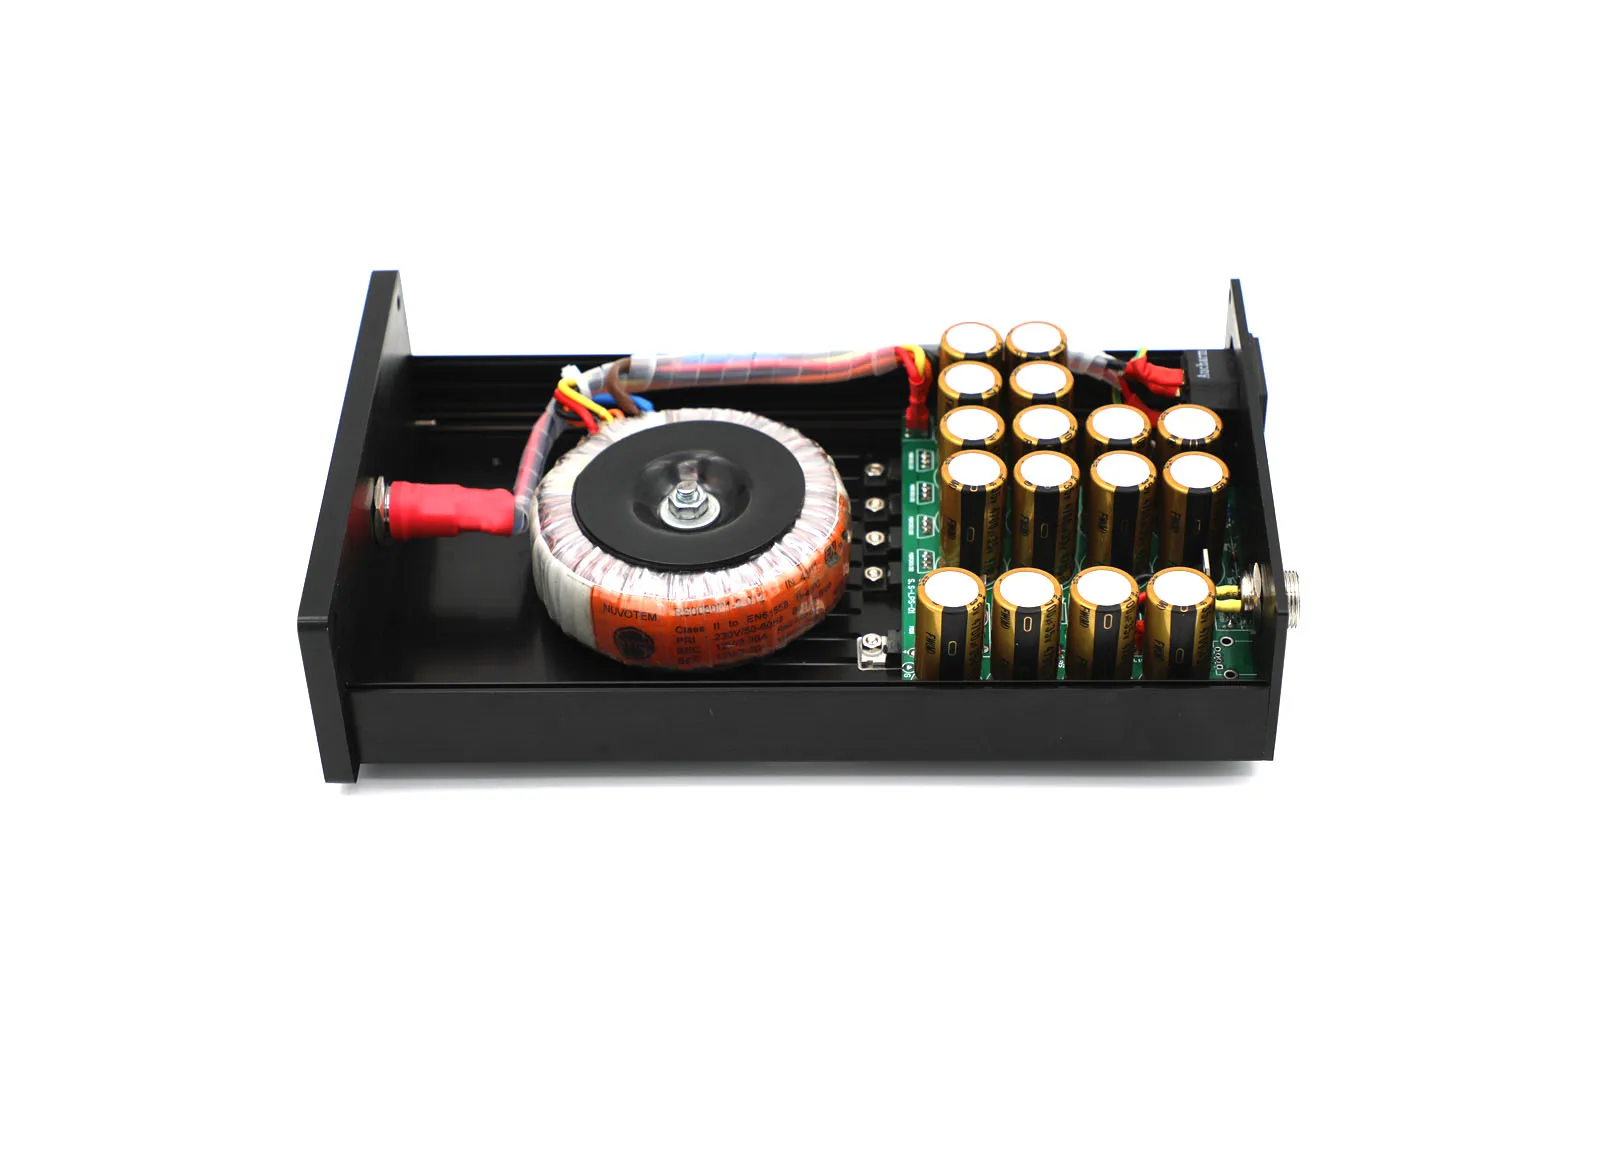 

Hiend 24 В постоянного тока 2,5 А Ультра низкий уровень шума линейный источник питания обновленный блок питания для аудио устройства